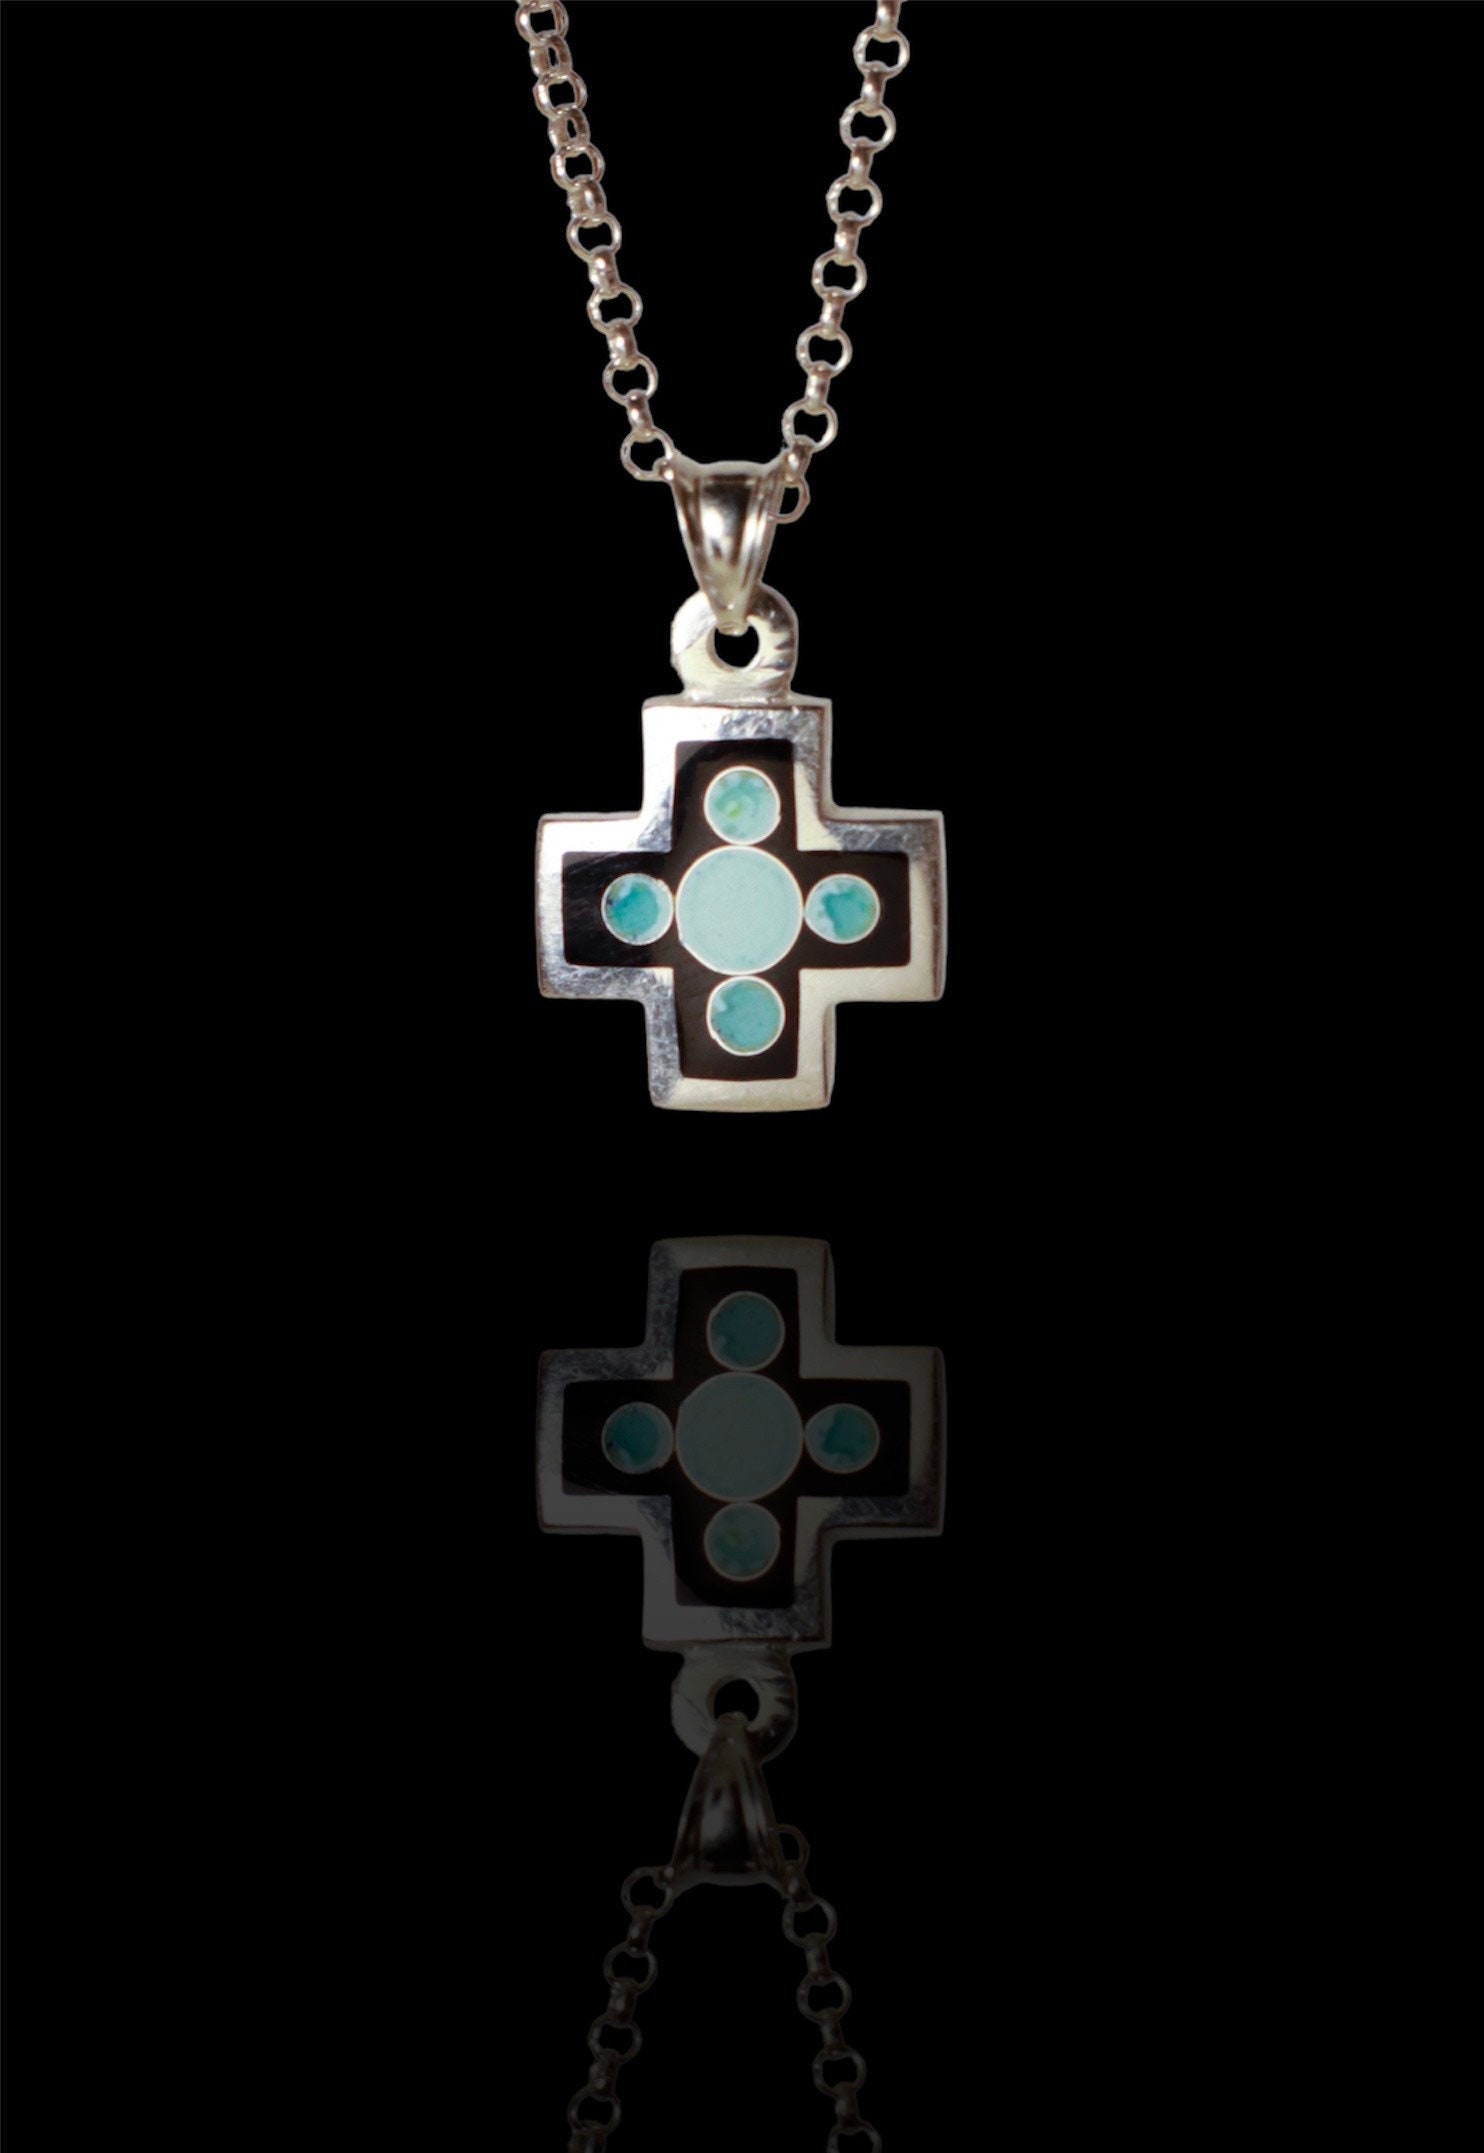 Kaufen Sie Türkis Emaille Kreuz Anhänger, Türkis Halskette, Sommer Halskette,  Handamde Kreuz Schmuck, zierliche Halskette, Geschenk für sie, hergestellt  in Griechenland. zu Großhandelspreisen